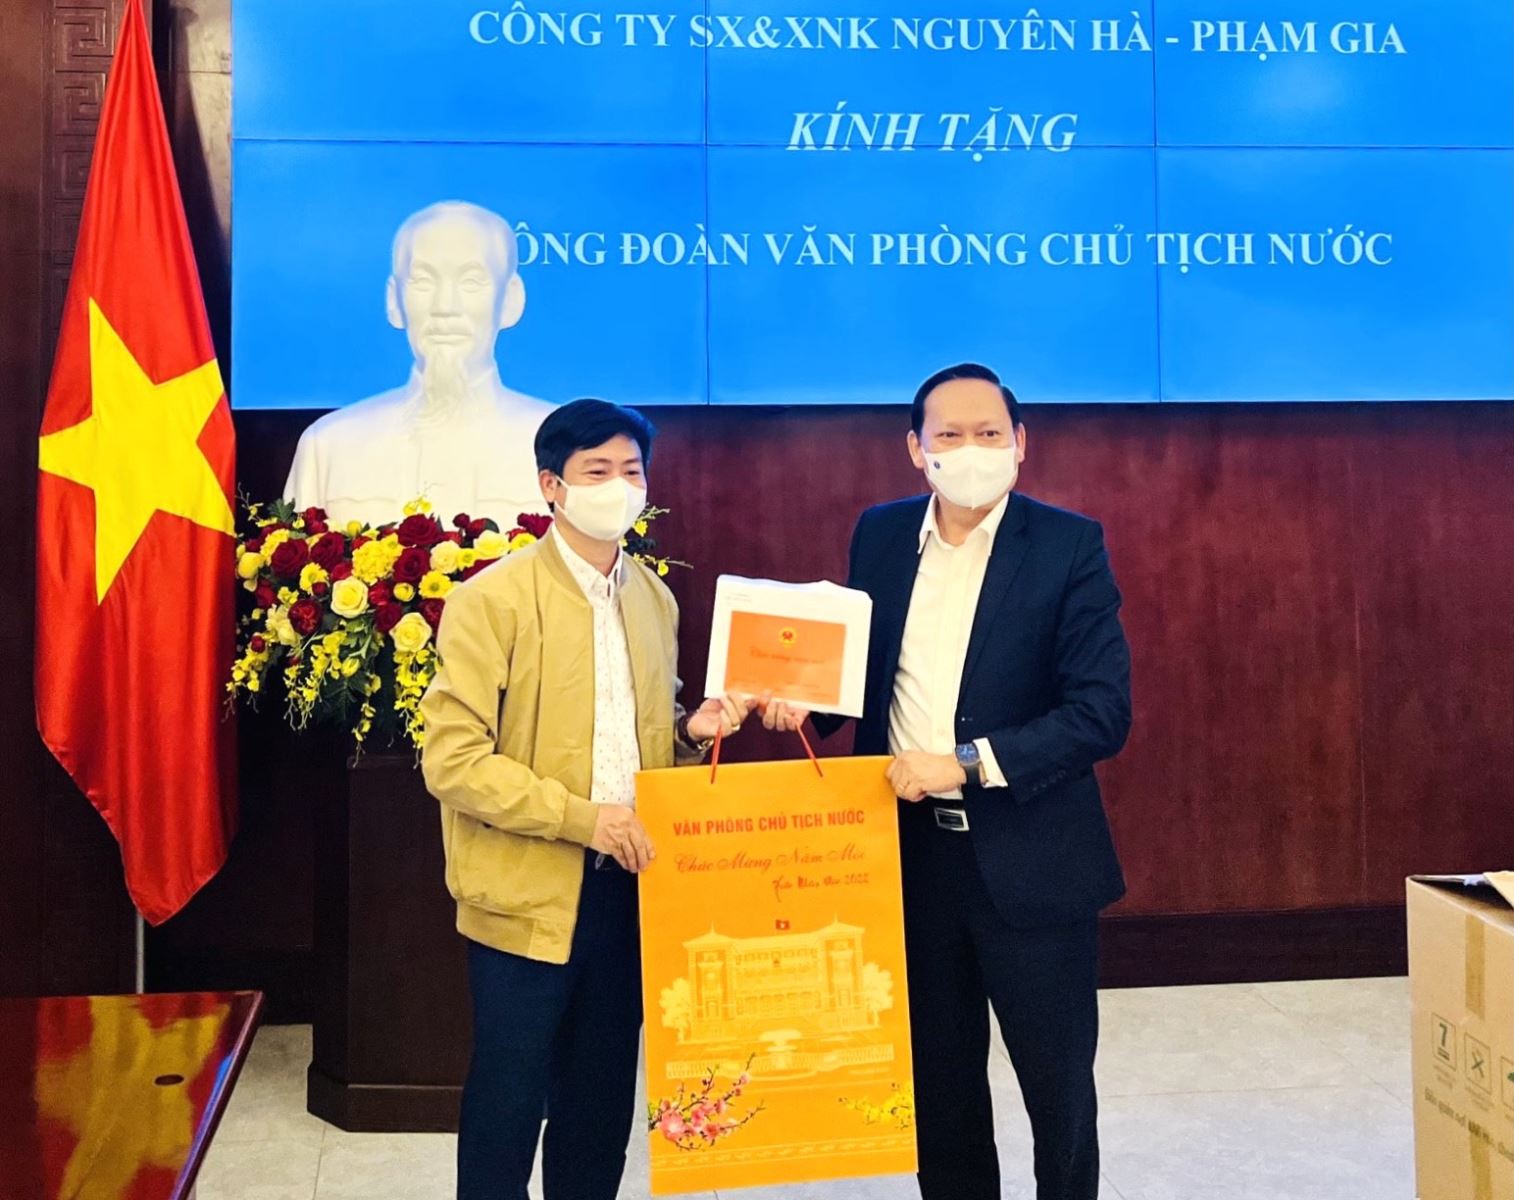 Ông Phạm Chí Hùng - Chủ tịch Hội đồng Quản trị Công ty Sản xuất và Xuất nhập khẩu Nguyên Hà - Phạm Gia trao tặng sản phẩm cho Văn phòng Chủ tịch nước